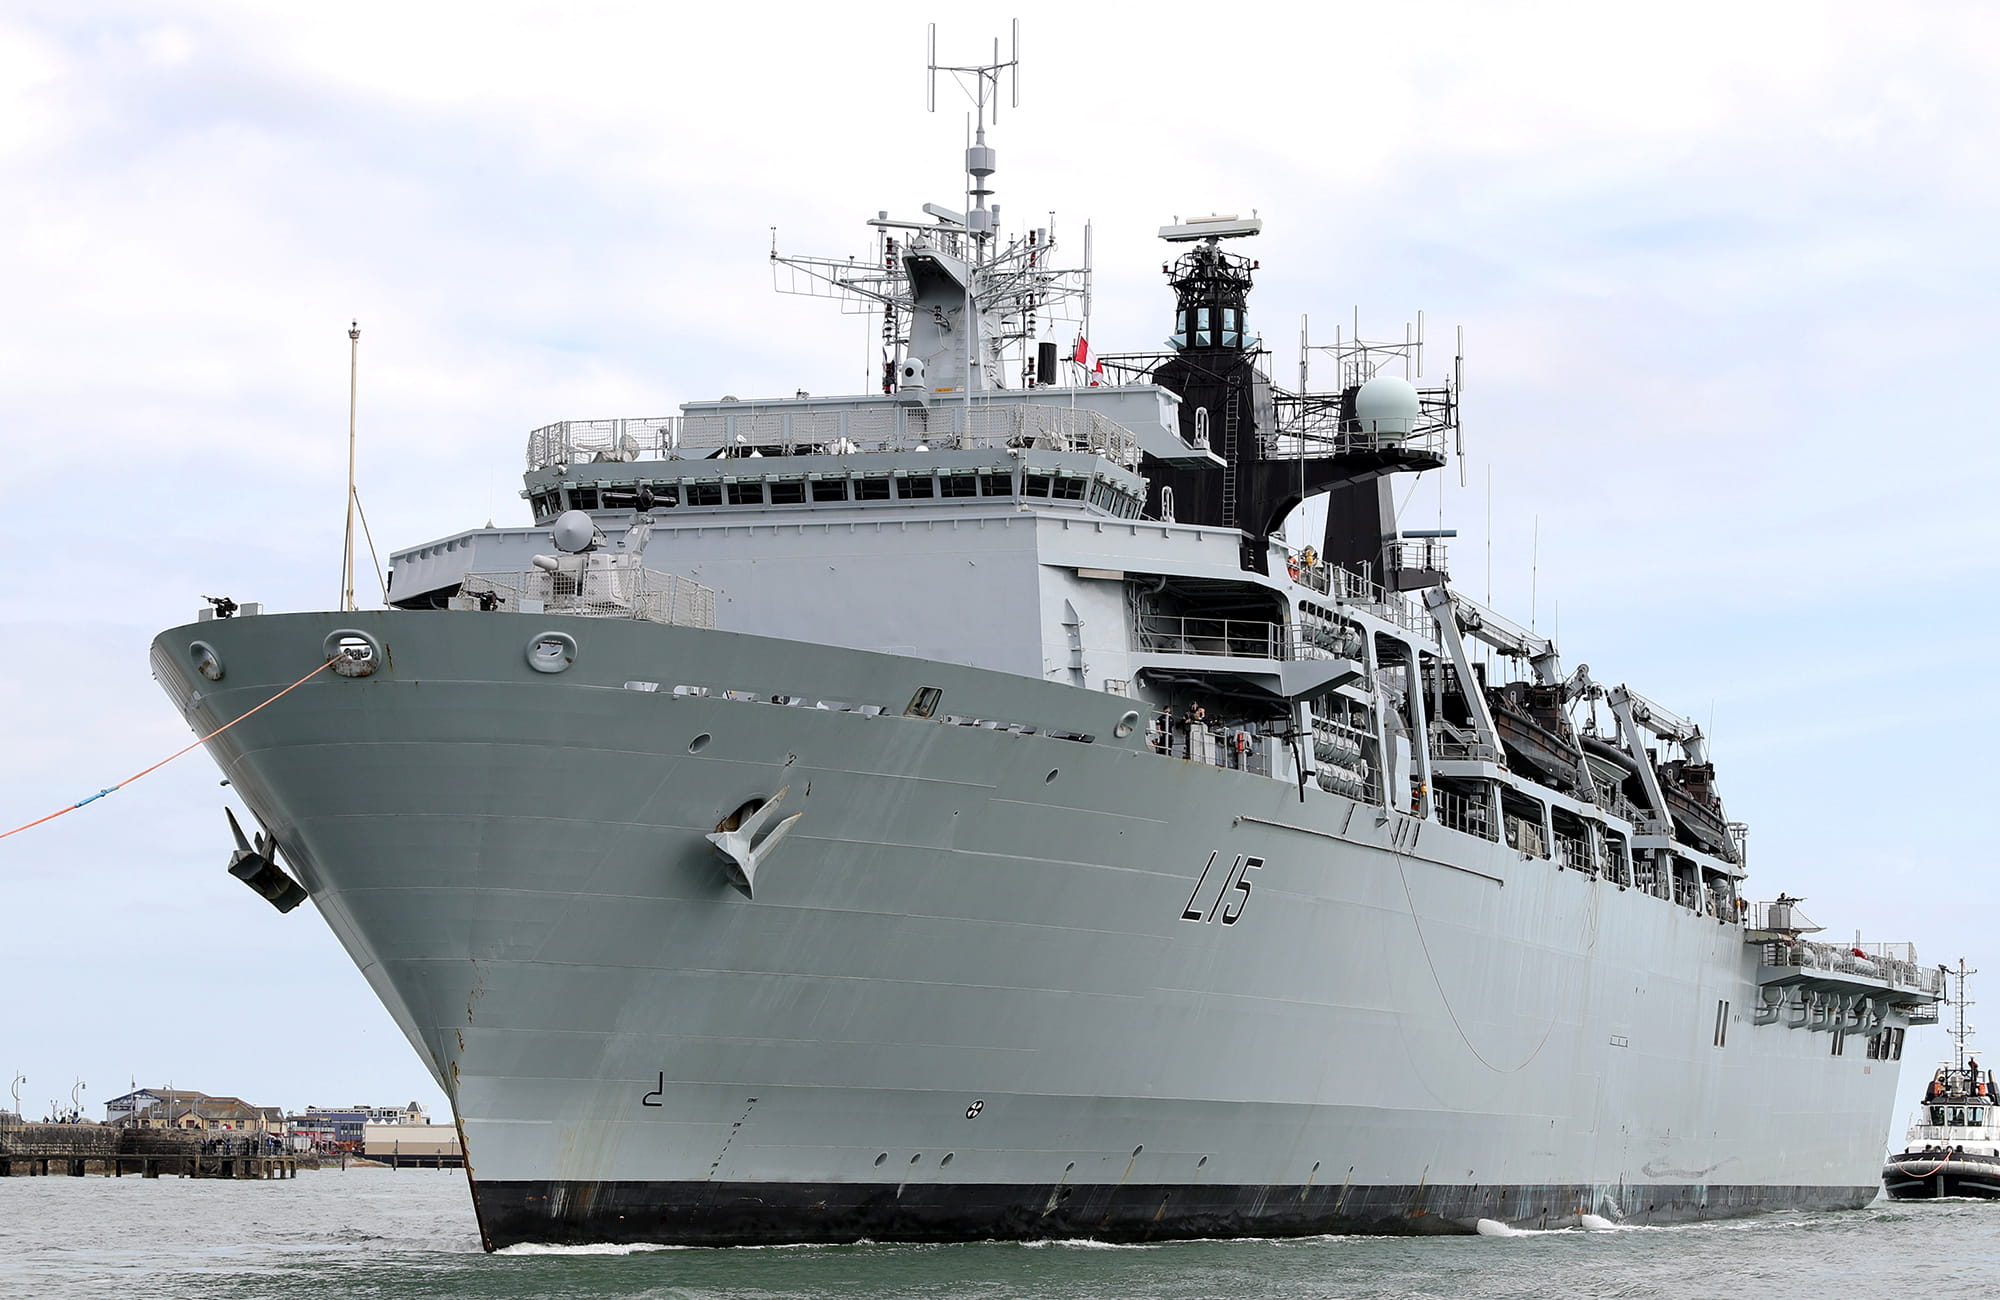 The large amphibious assault ship, HMS Bulwark enters Portsmouth Harbour